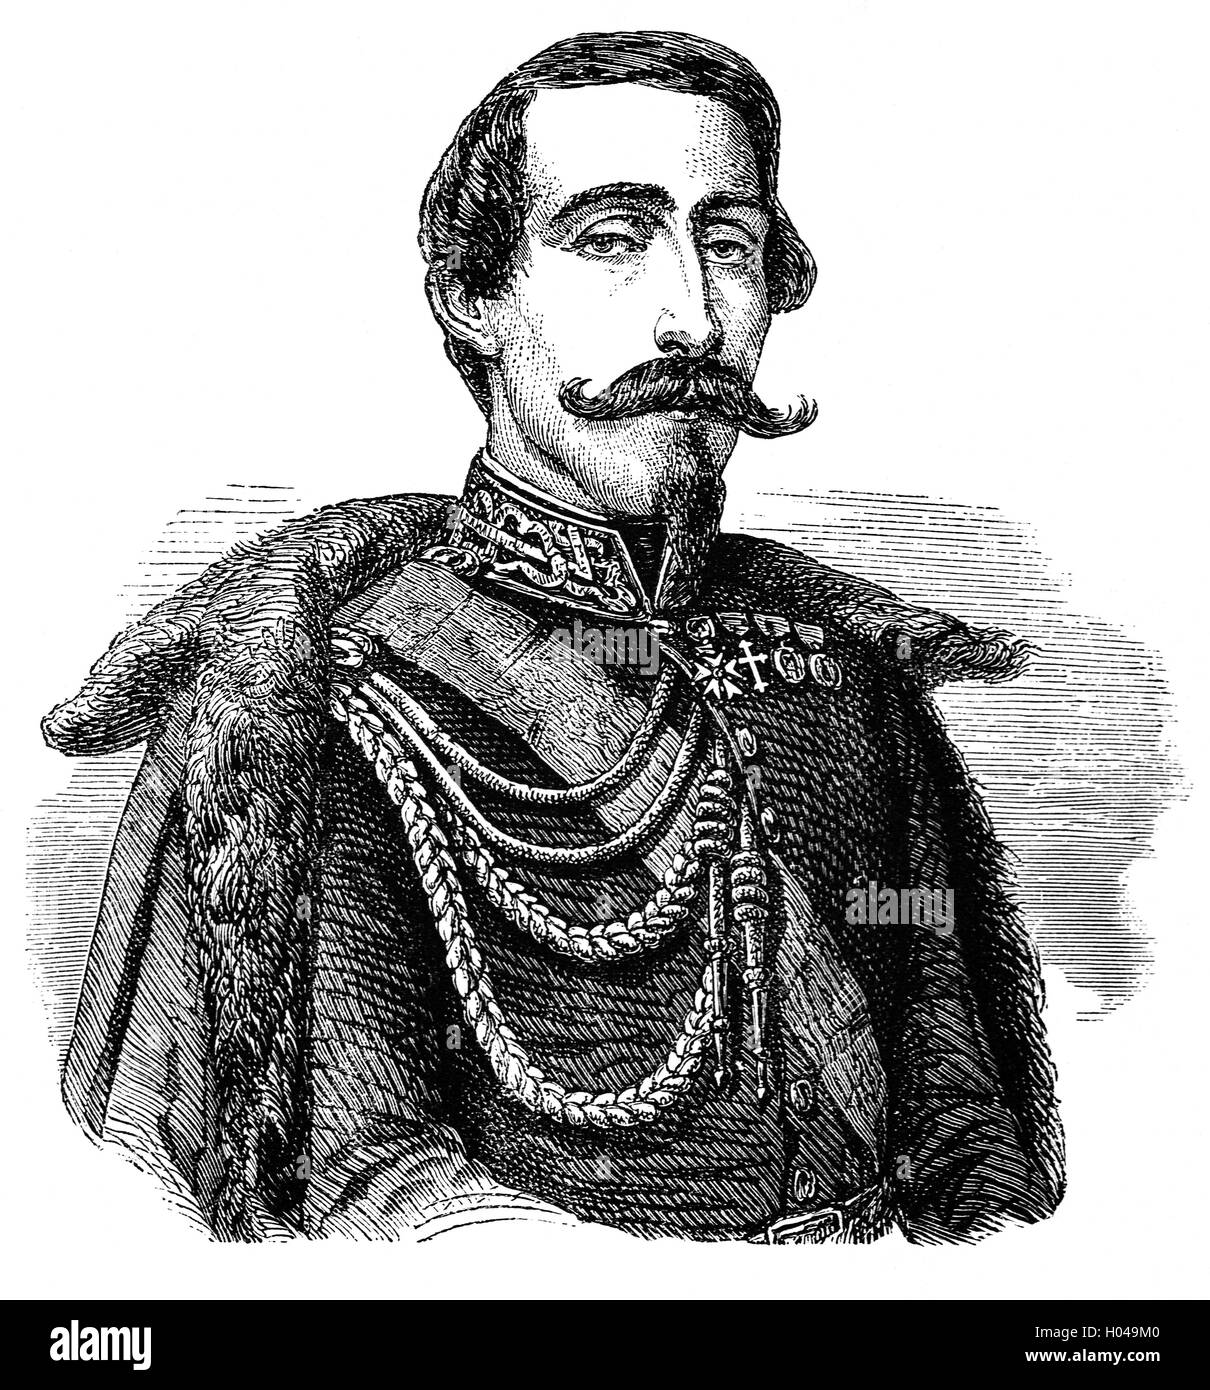 Alessandro Ferrero La Marmora (1799-1855) war ein italienischer General, am besten in Erinnerung ist für die Gründung der militärischen Einheit der Bersaglieri. Er nahm an der Schlacht von Goito (1848) während der ersten italienischen Unabhängigkeitskrieg und diente als Divisionskommandeur im Krimkrieg. Stockfoto